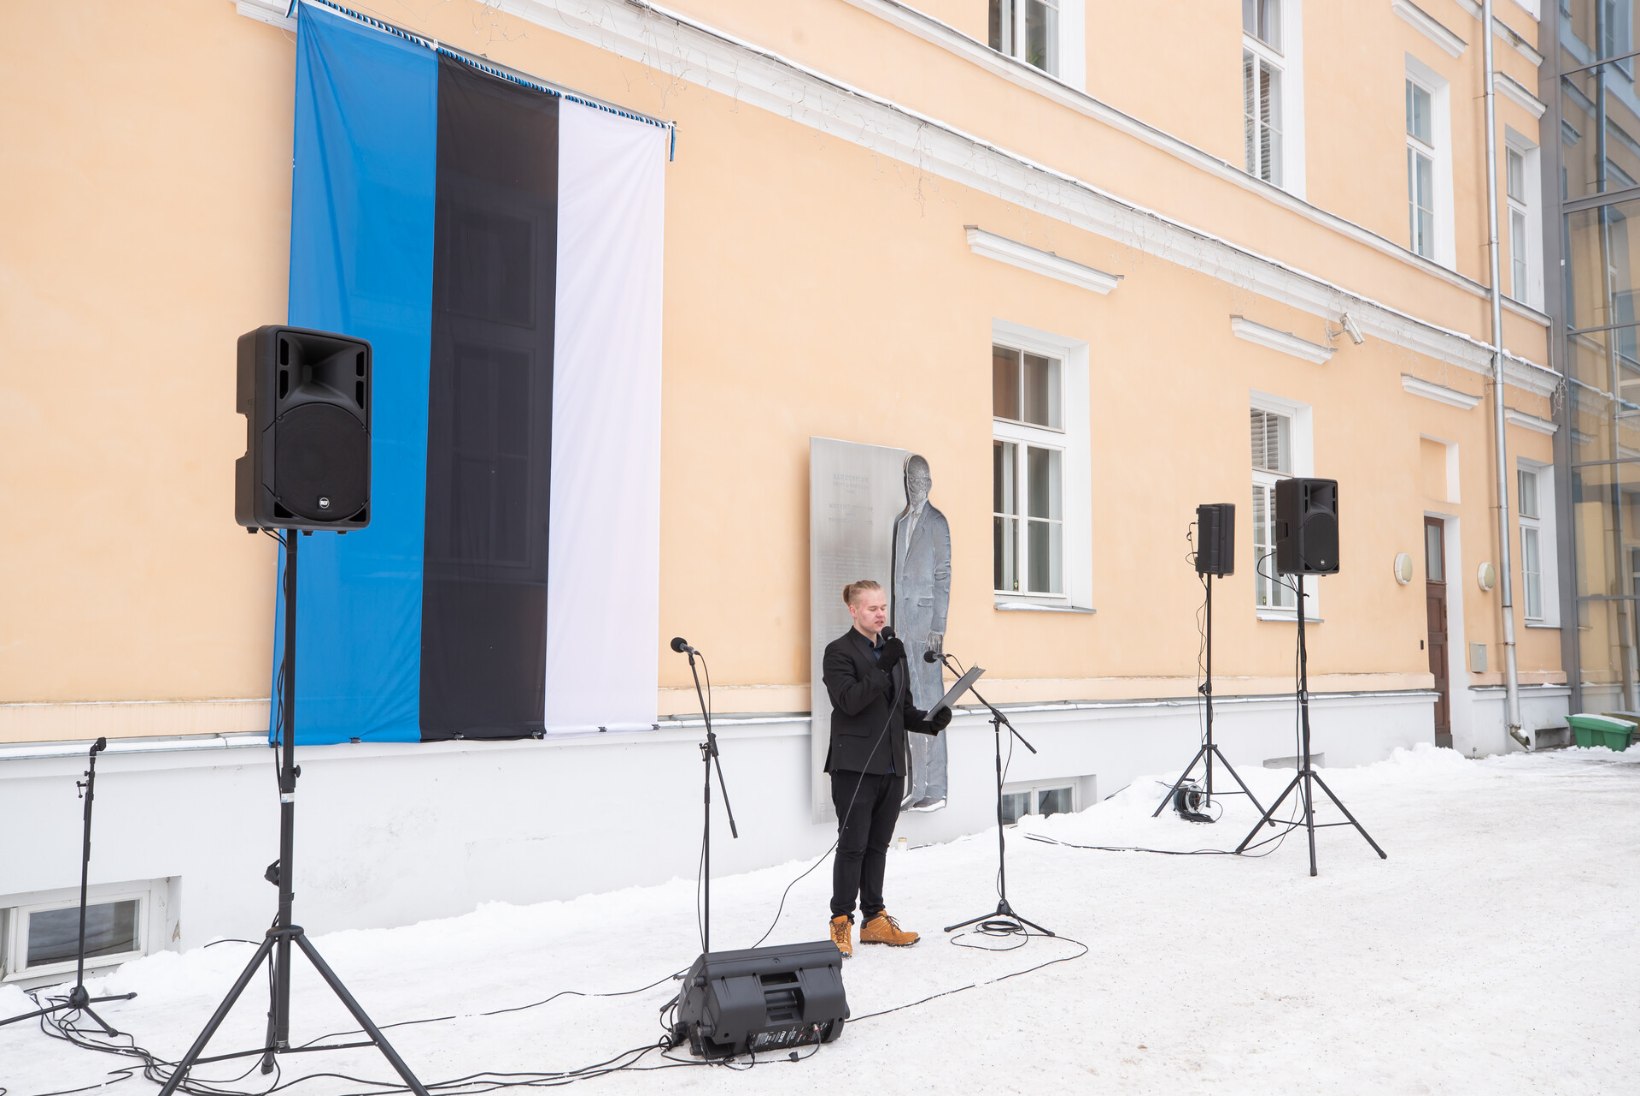 Gümnasistid tähistasid Poska gümnaasiumi ees Tartu rahu aastapäeva